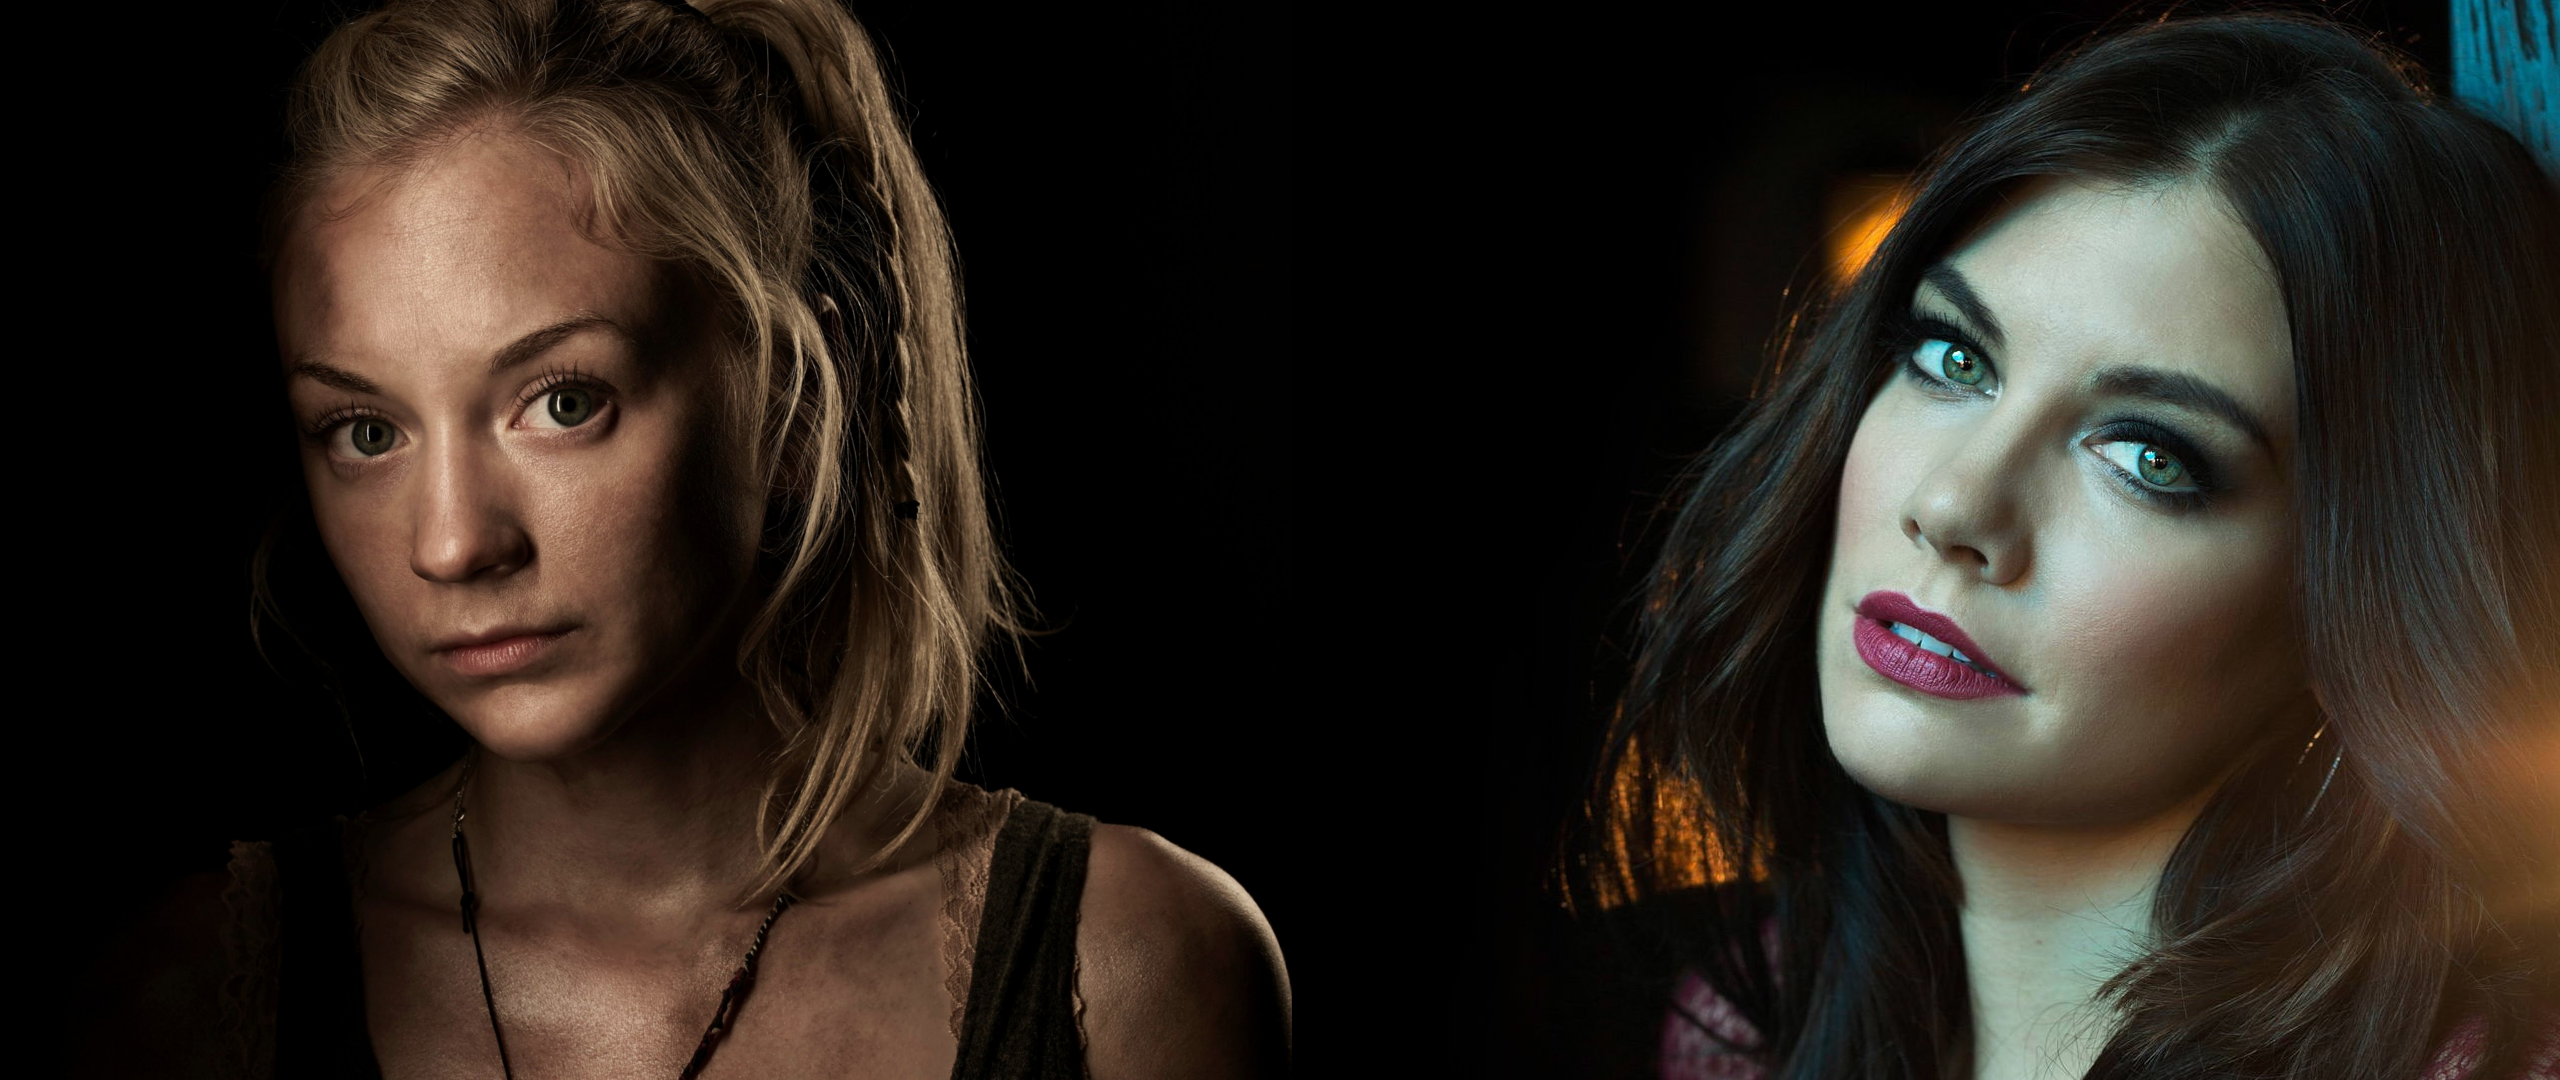 The Walking Dead Ultrawide Collage Lauren Cohan Emily Kinney 2560x1080